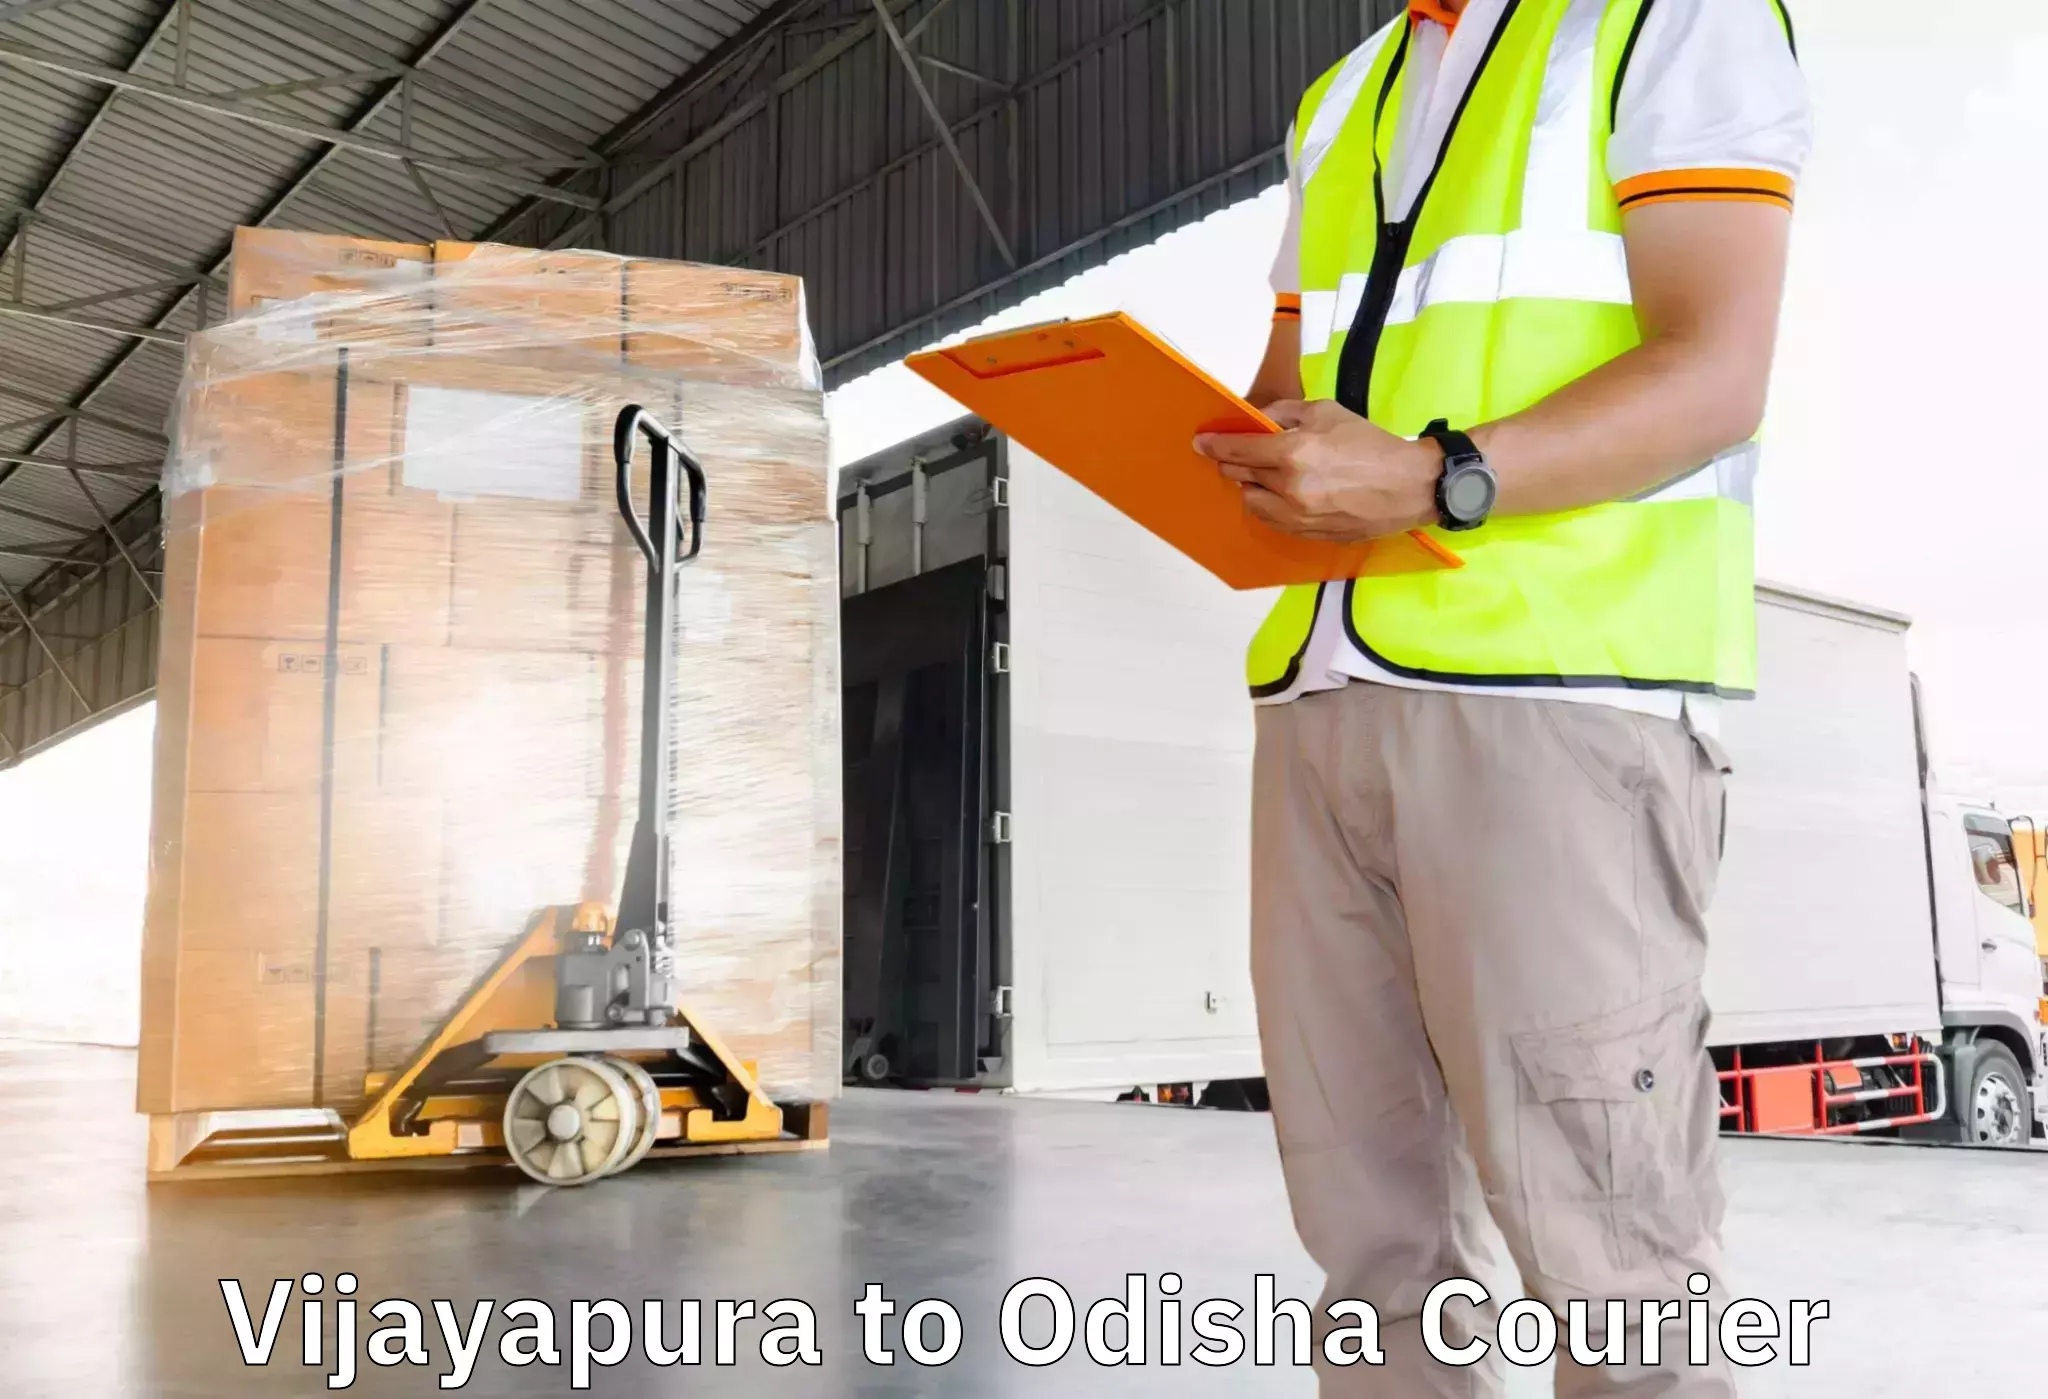 Furniture transport and logistics Vijayapura to Mathili